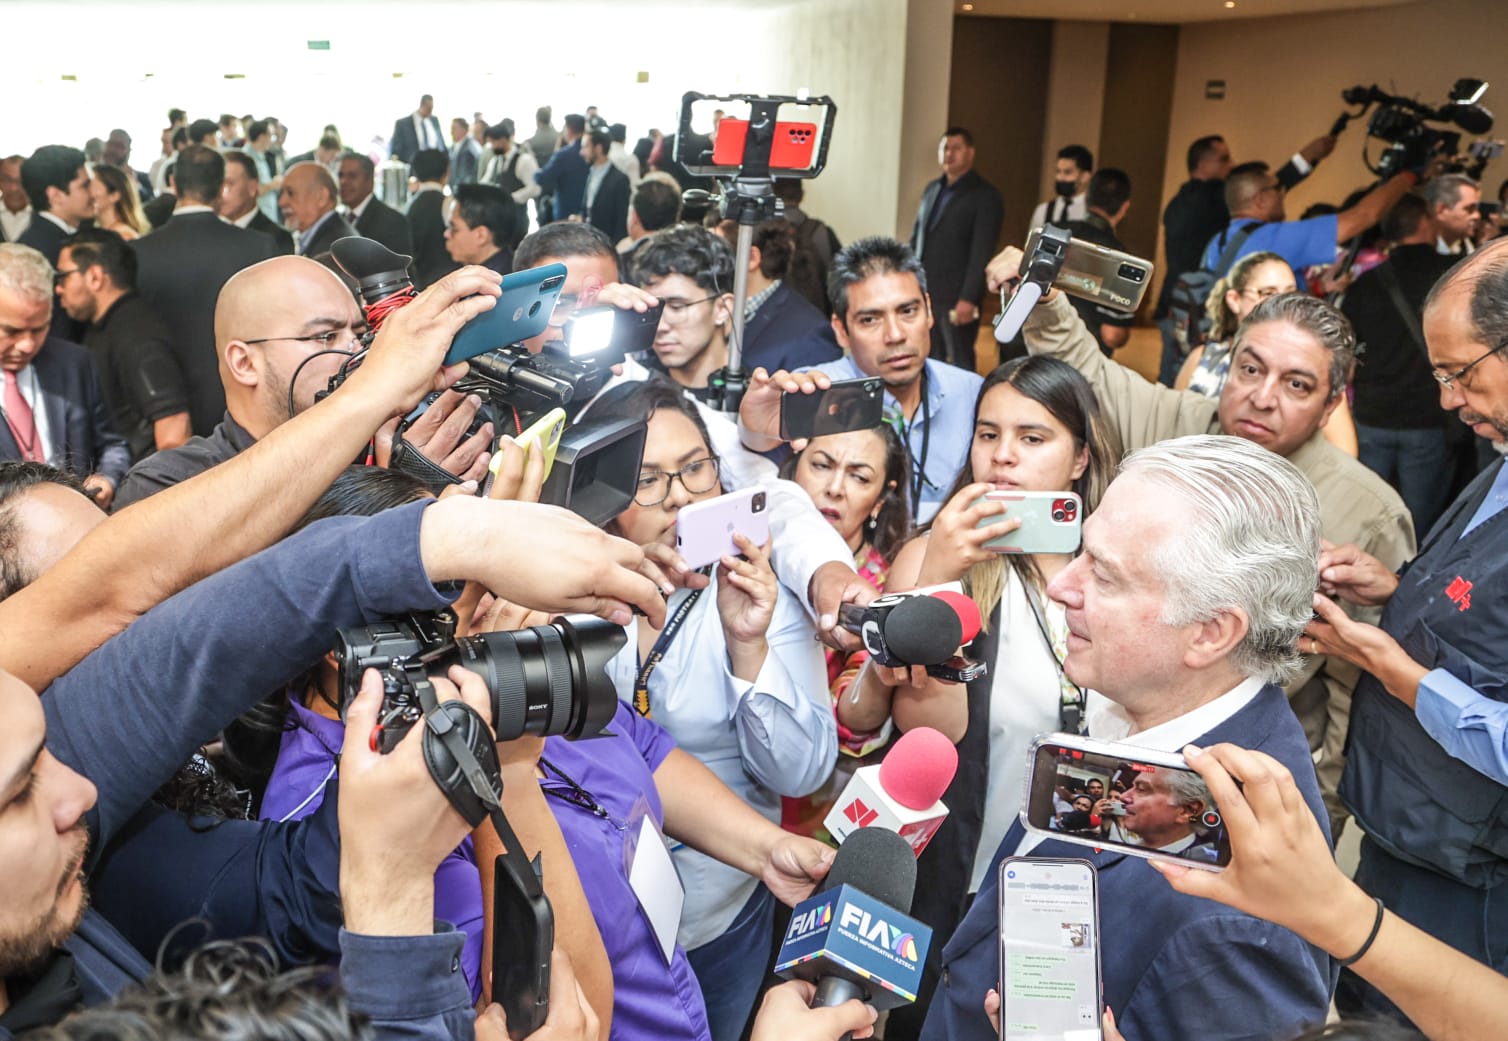 Santiago Creel rechaza imputaciones de mal uso de fondos y asegura mantenerse firme en su cargo